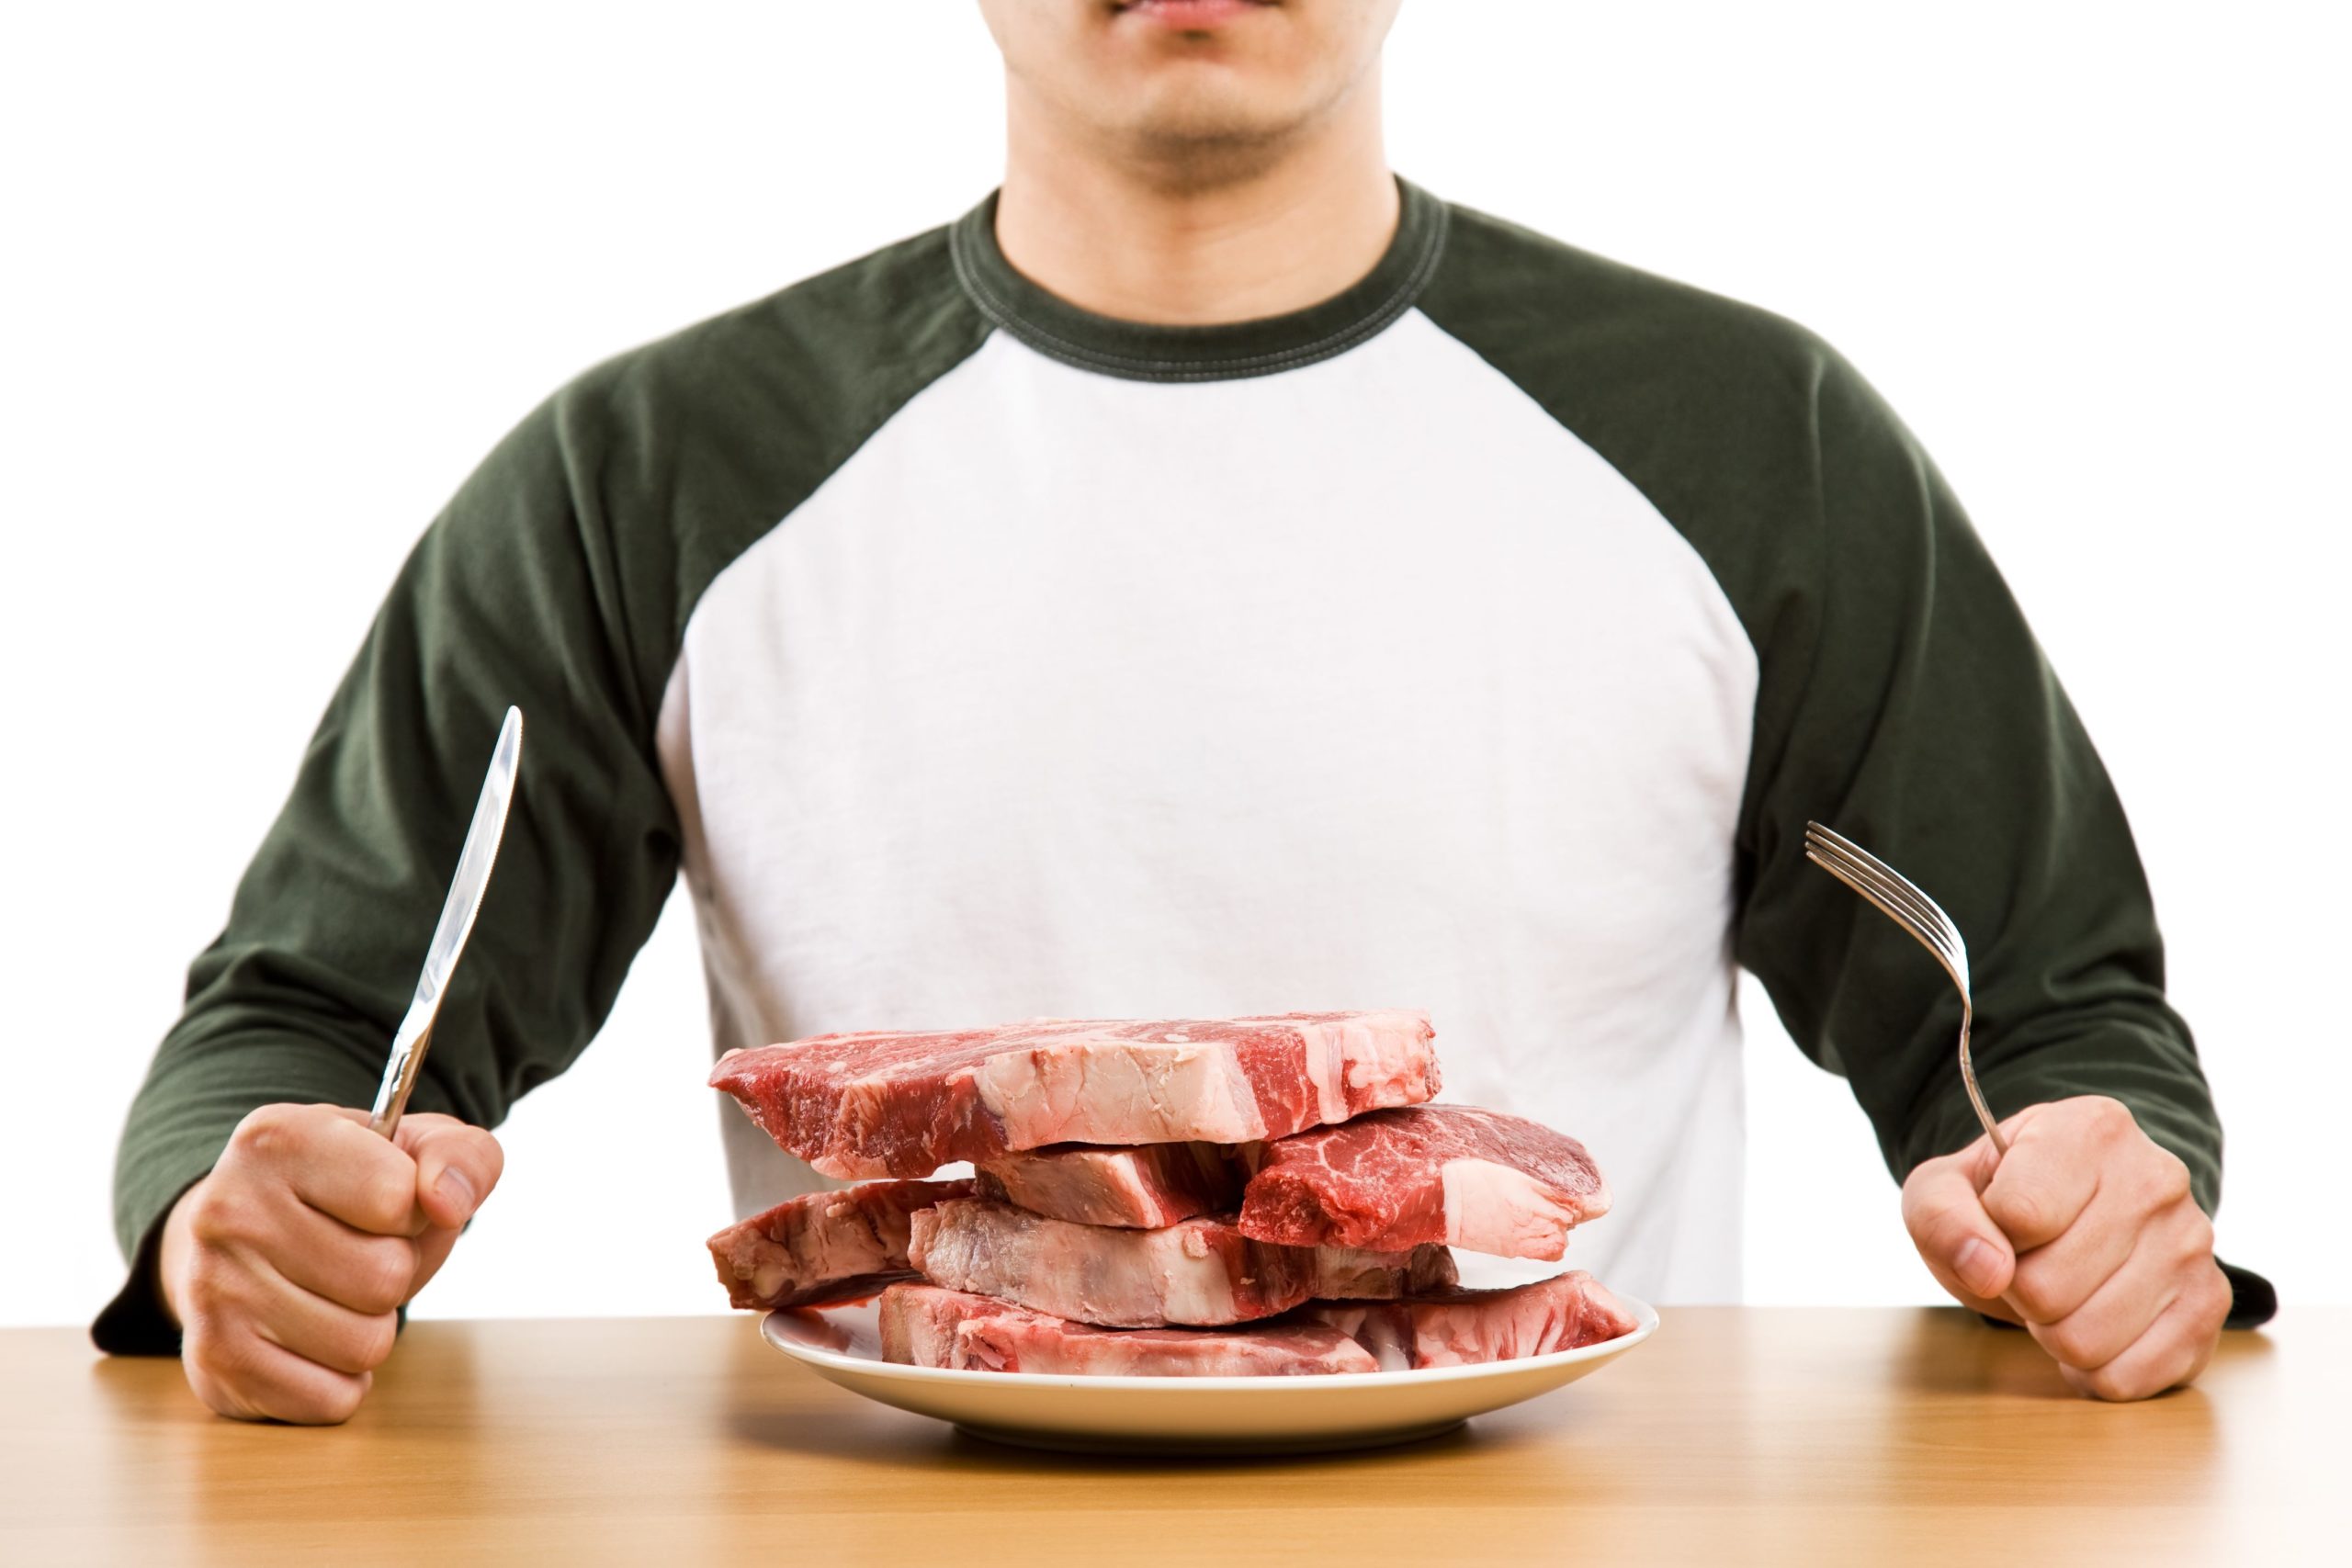 مادة غذائية يمكن الحصول عليها عند التغذي على اللحوم .